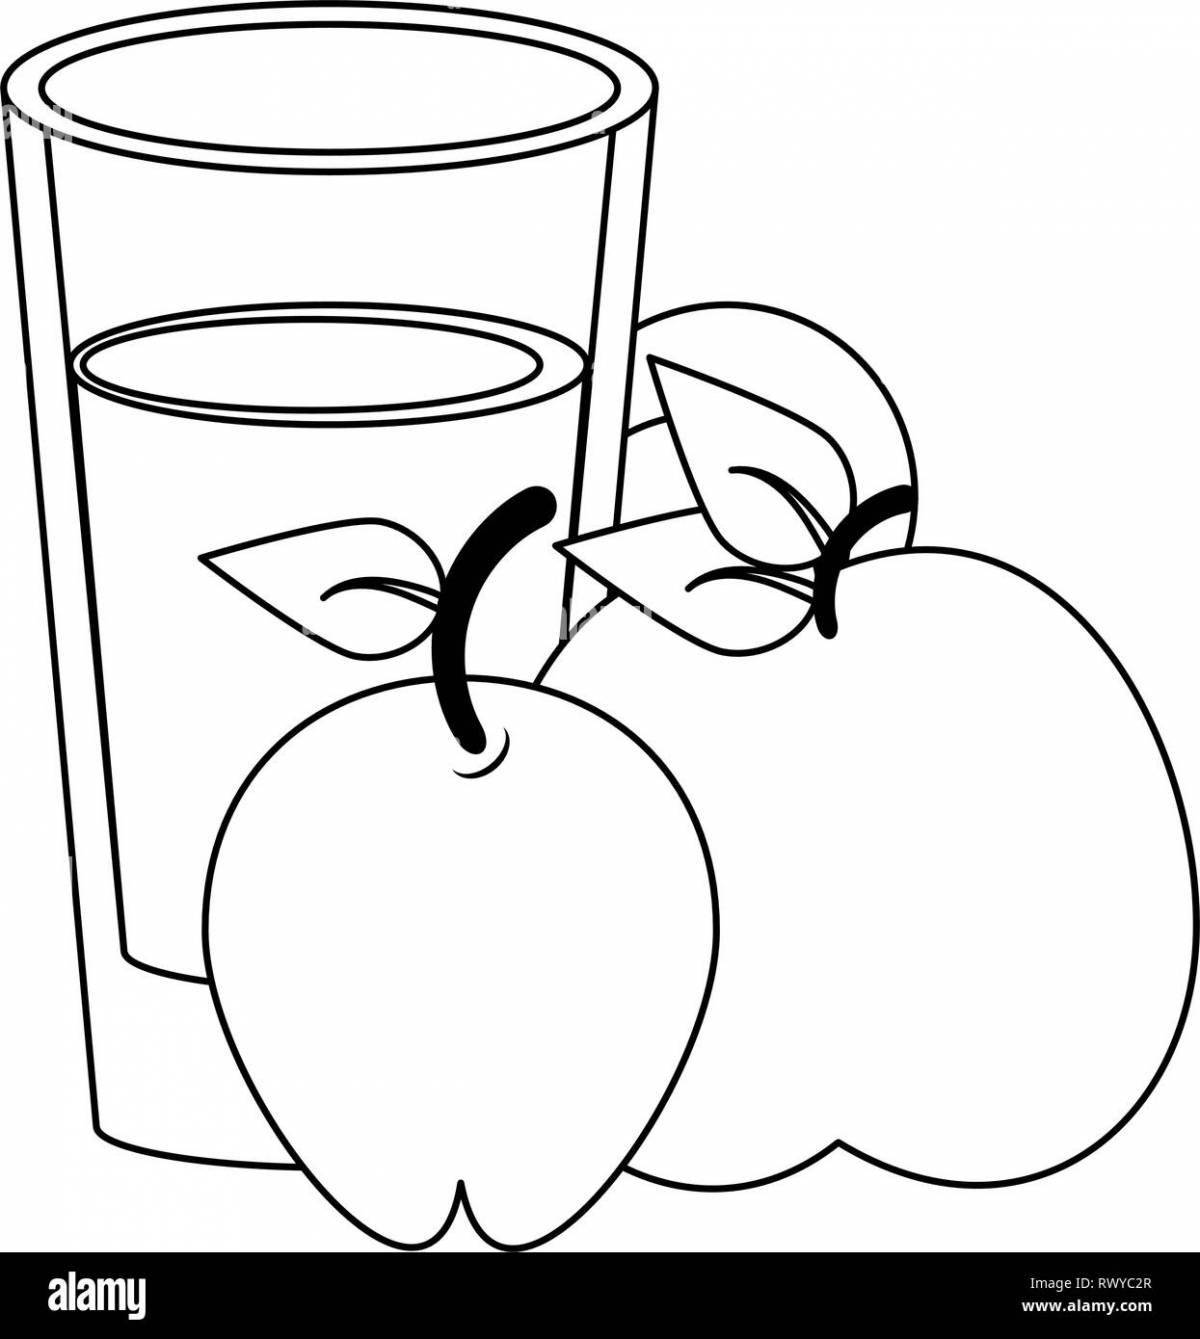 Joyful apple juice coloring page